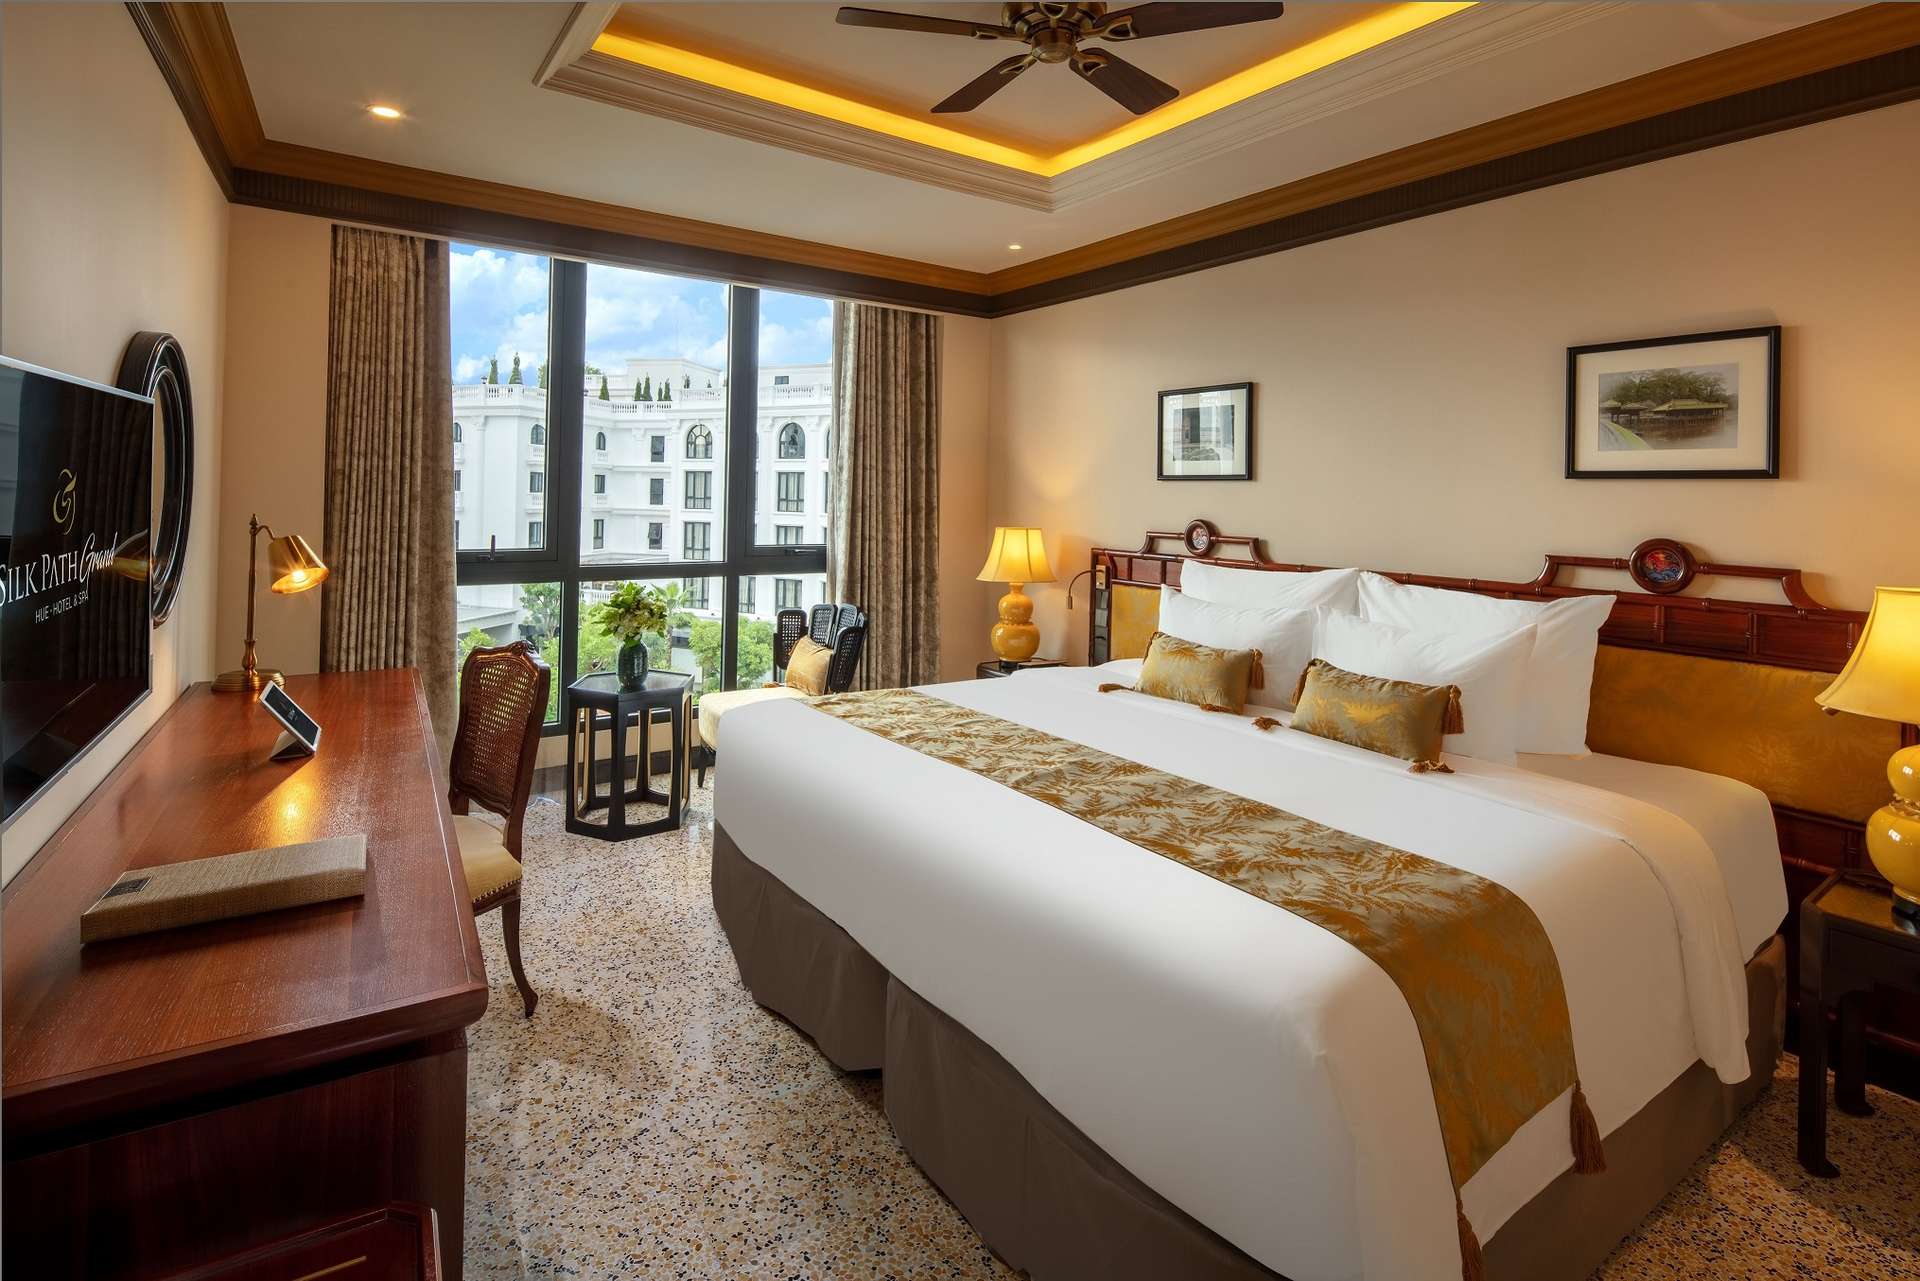 Silk Path Grand Hue Hotel - Khách sạn ở Huế gần sông Hương